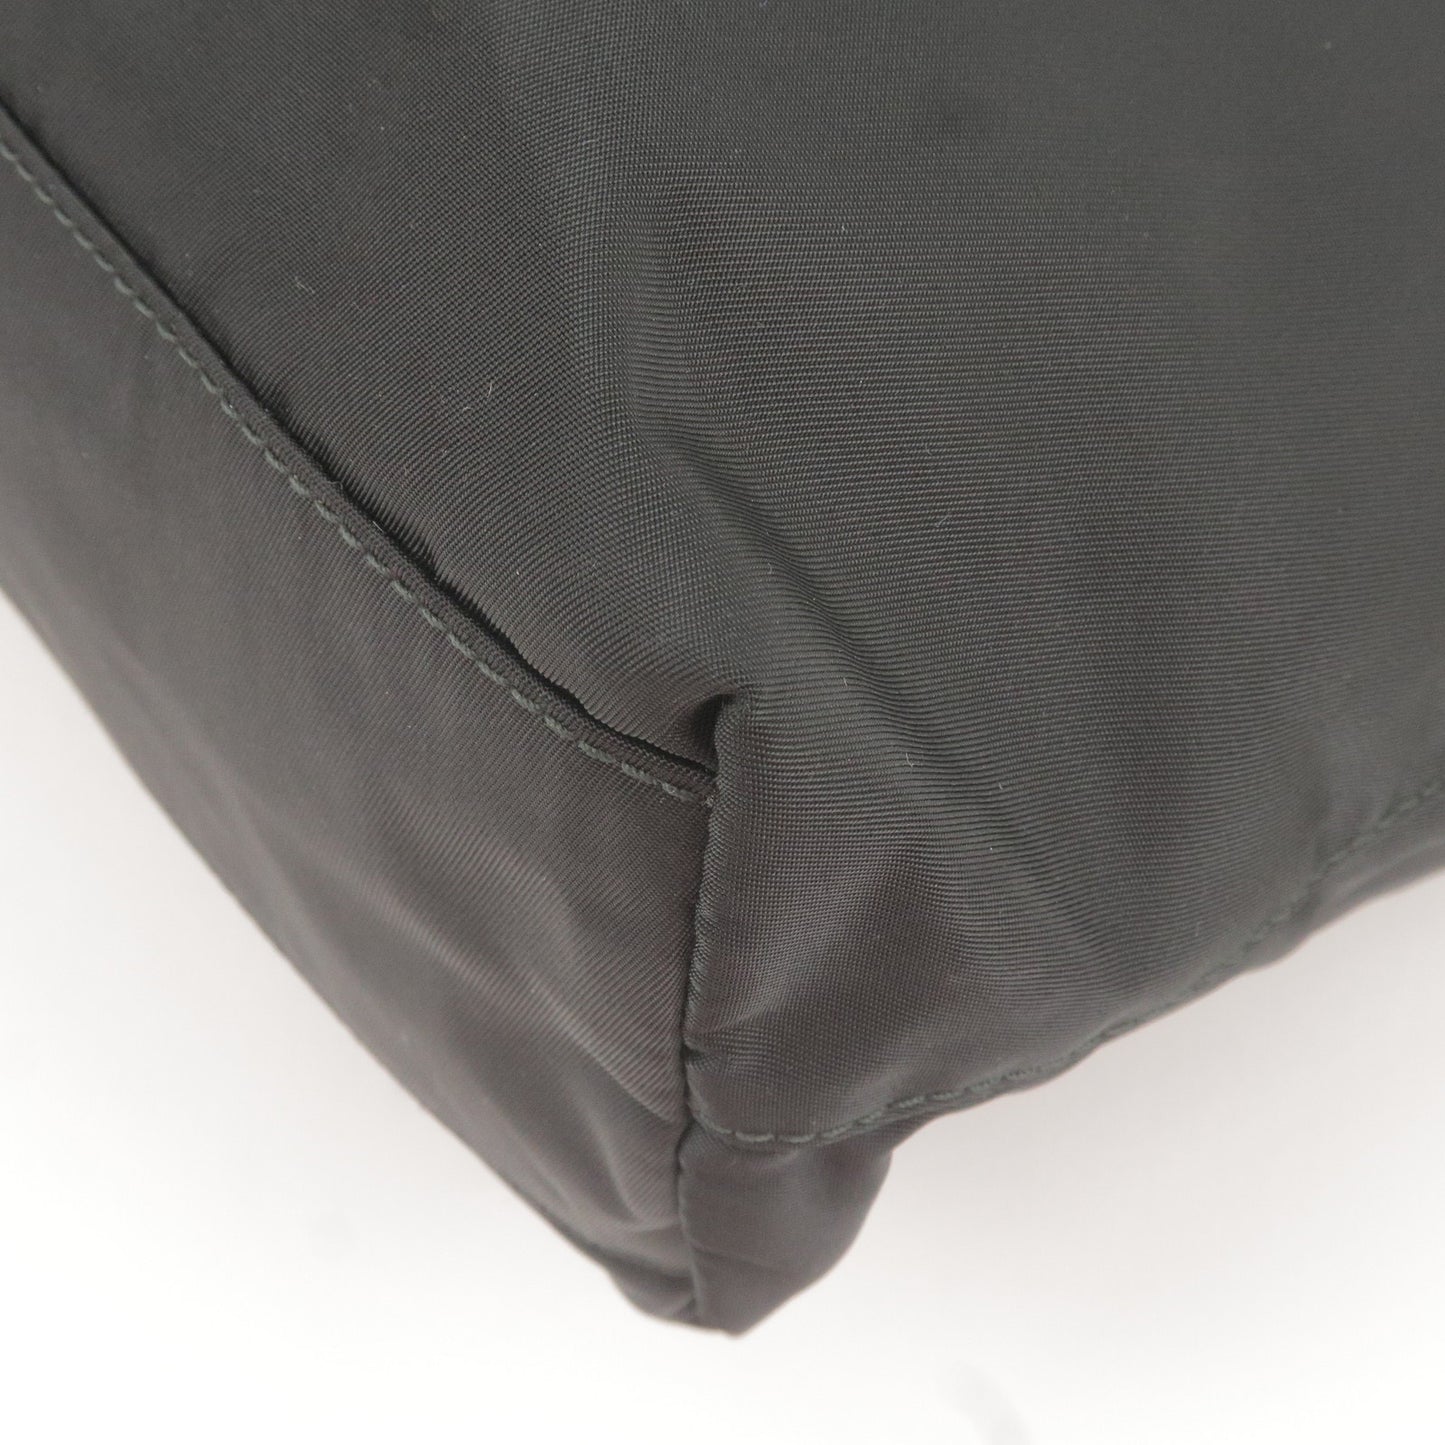 PRADA Logo Nylon Leather Tote Bag Black BR4263